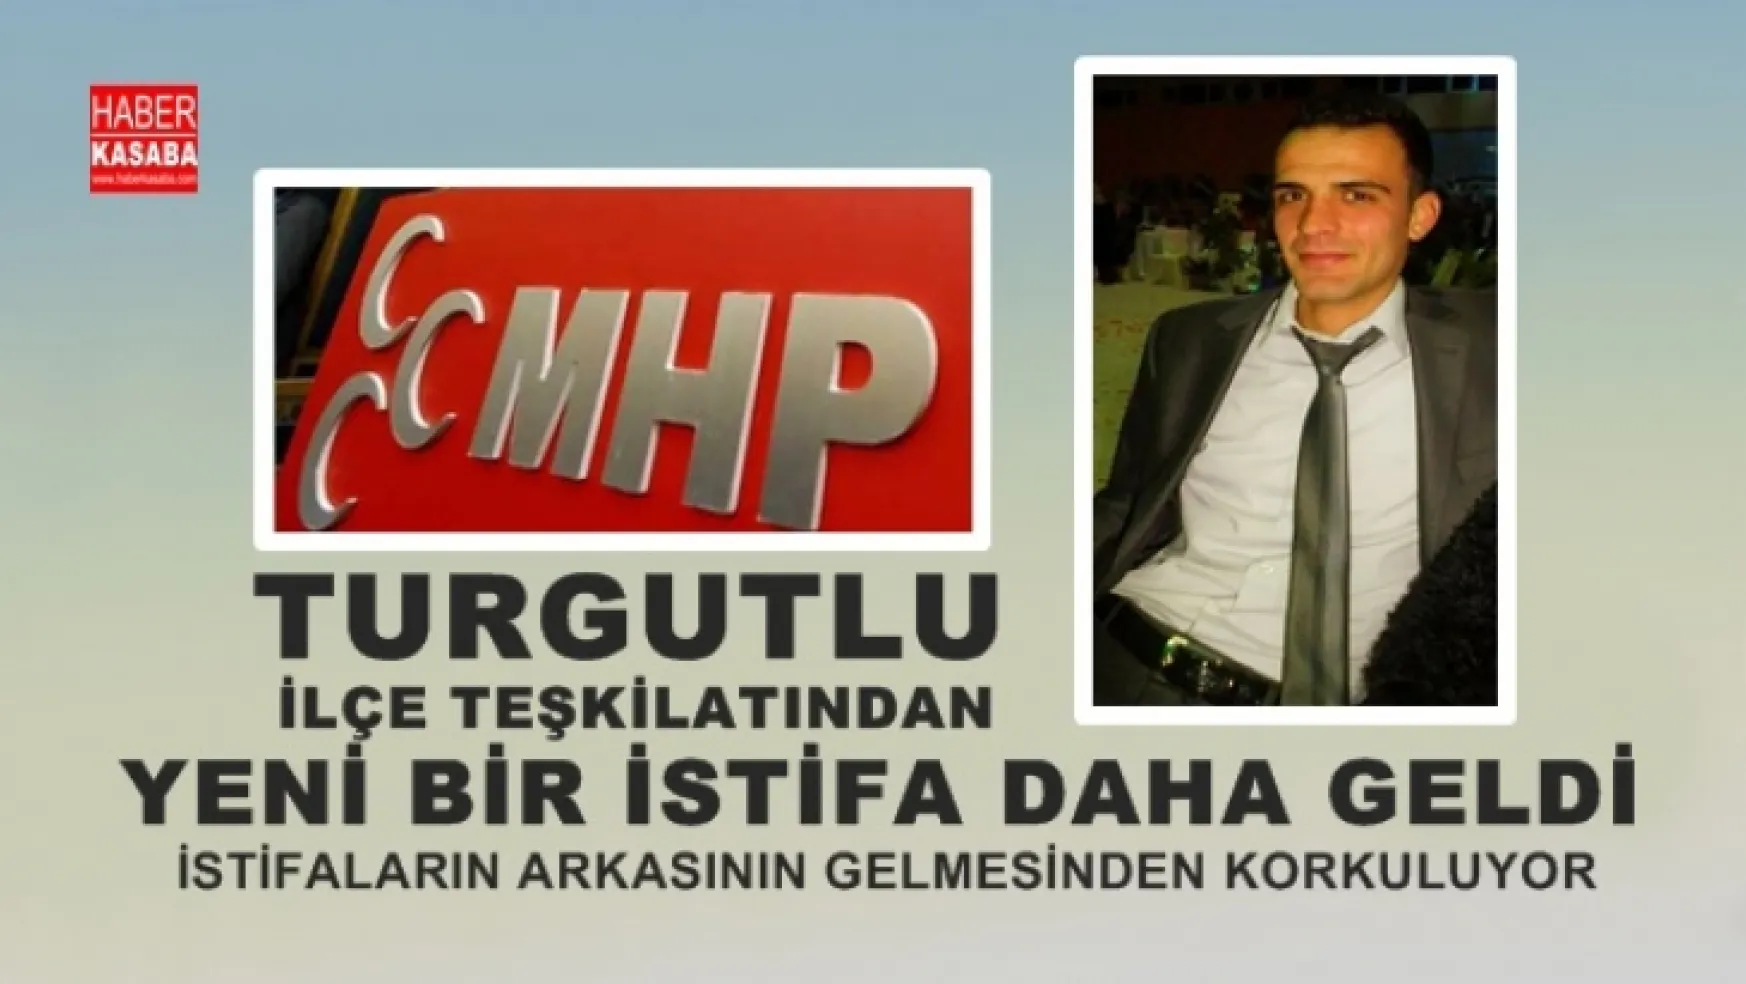 MHP Turgutlu İlçe Teşkilatı'ndan bir istifa daha!